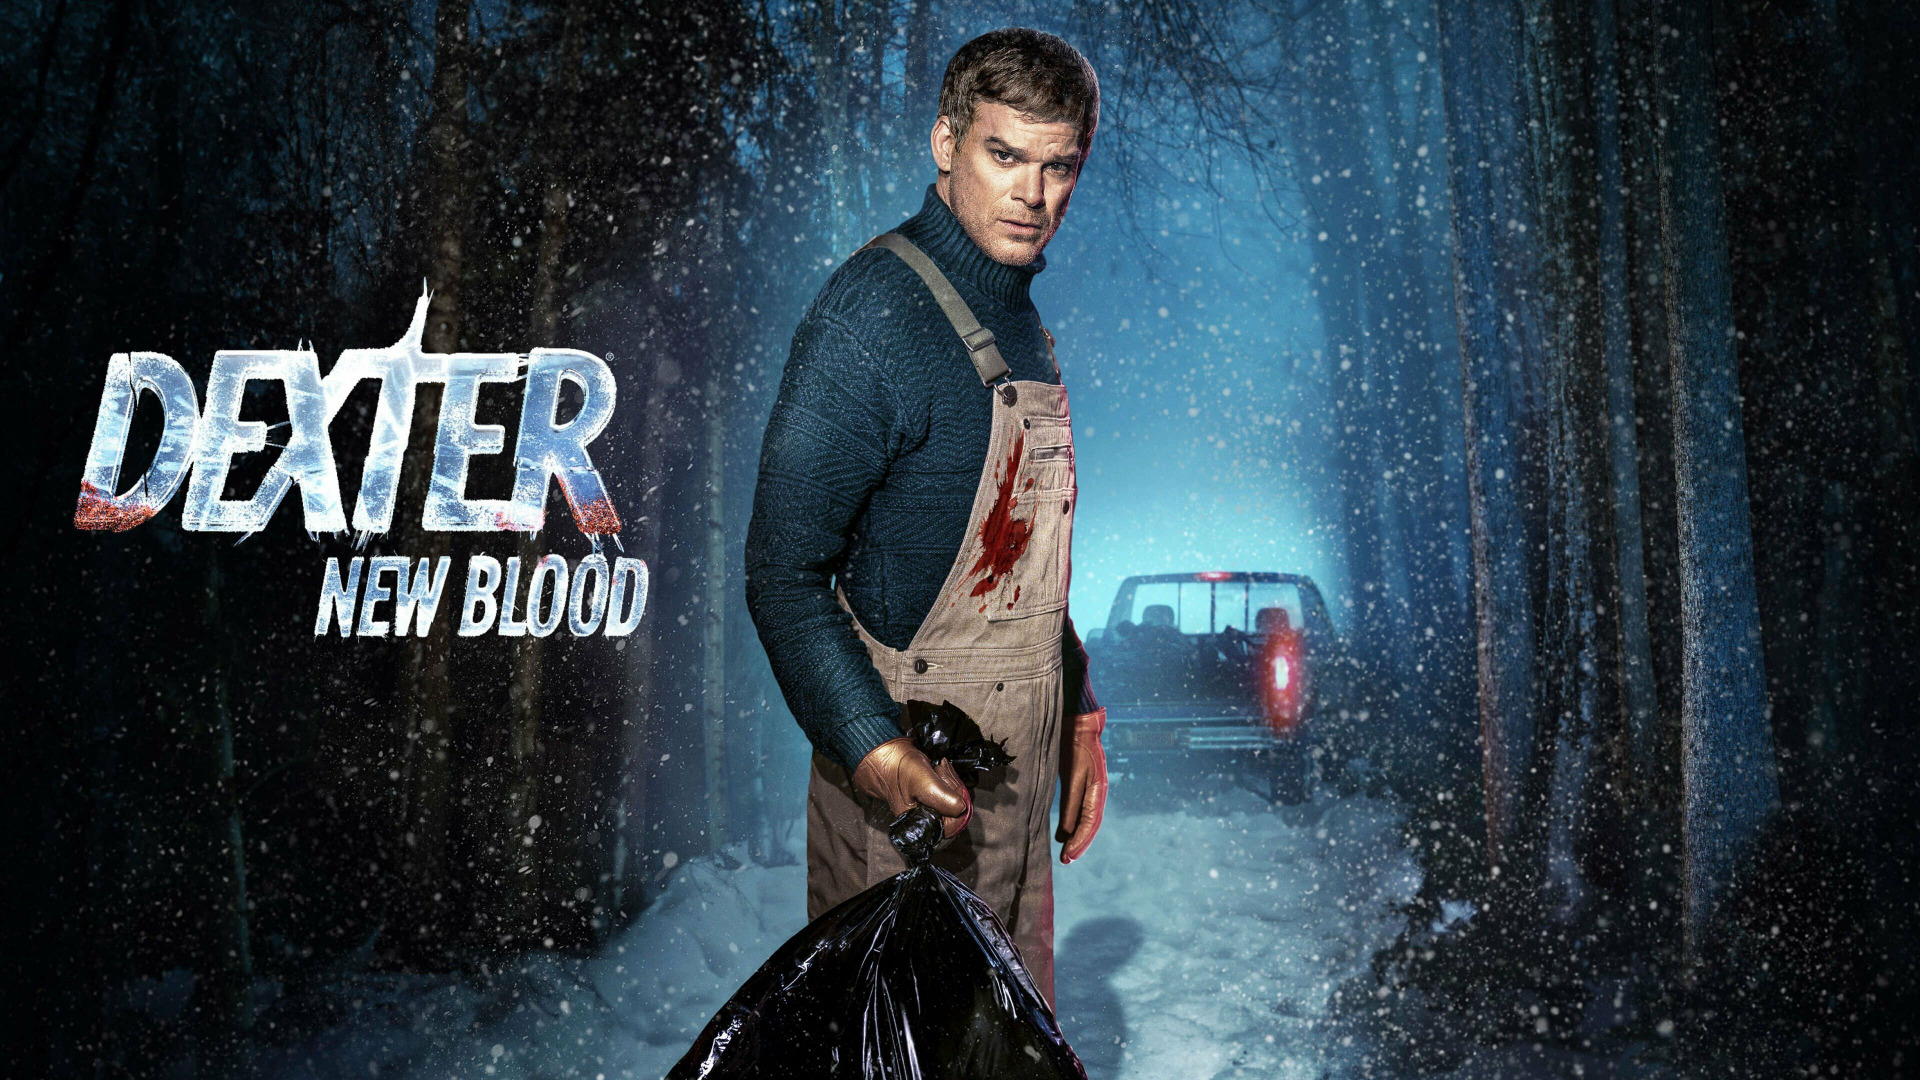 Show Dexter: New Blood